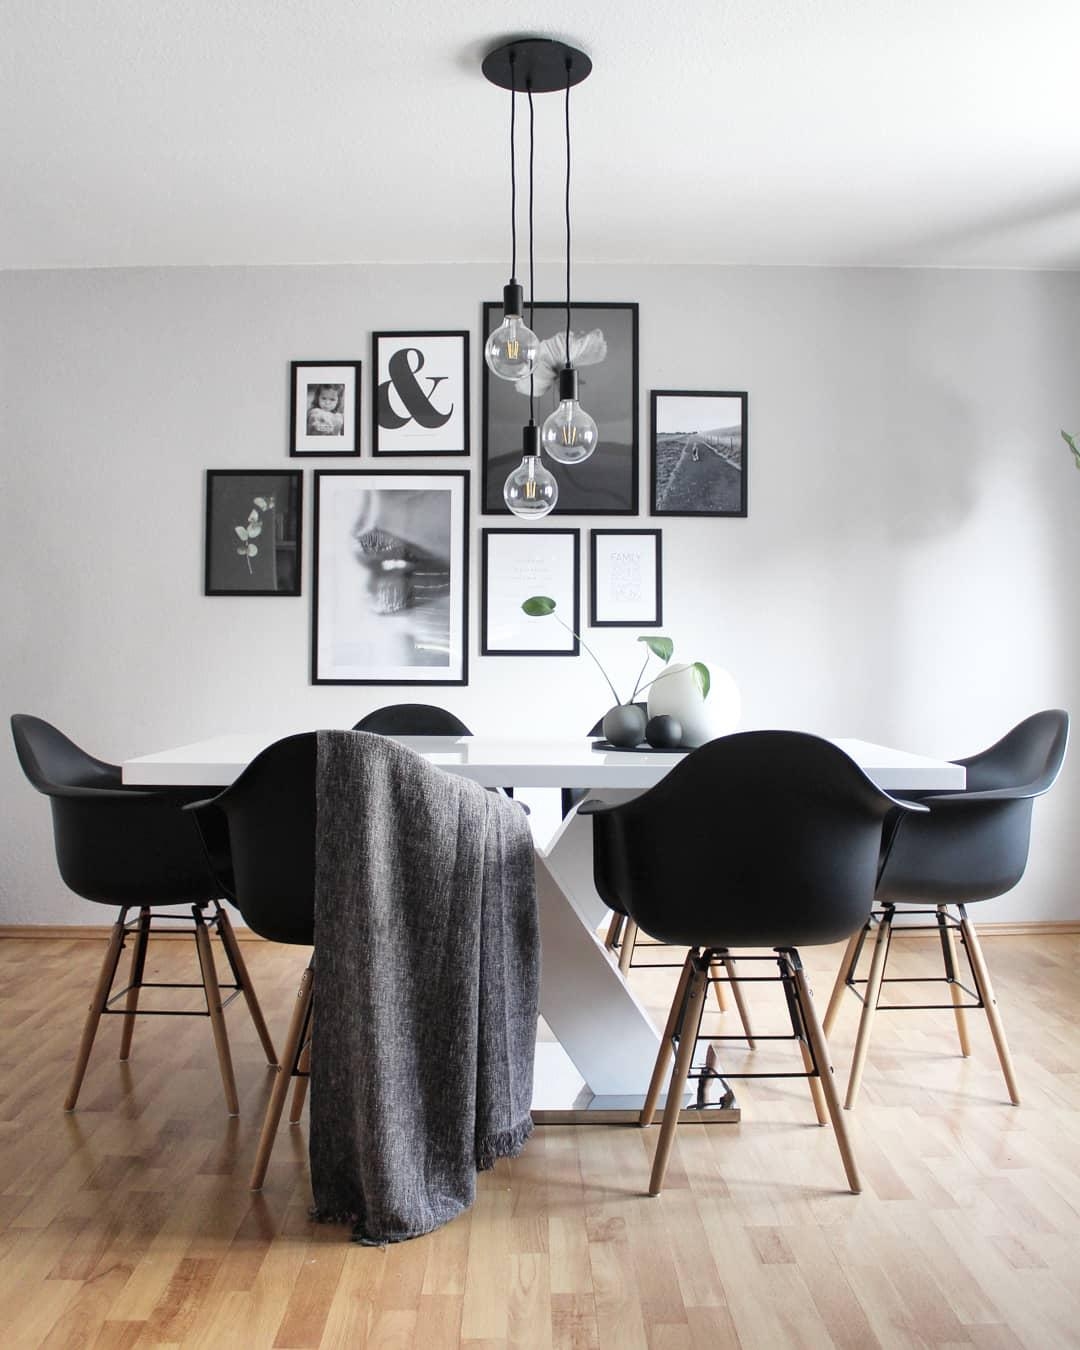 Auch kleine Veränderungen bewirken großes #esszimmer #minimalism #scandinavianhome #ikea